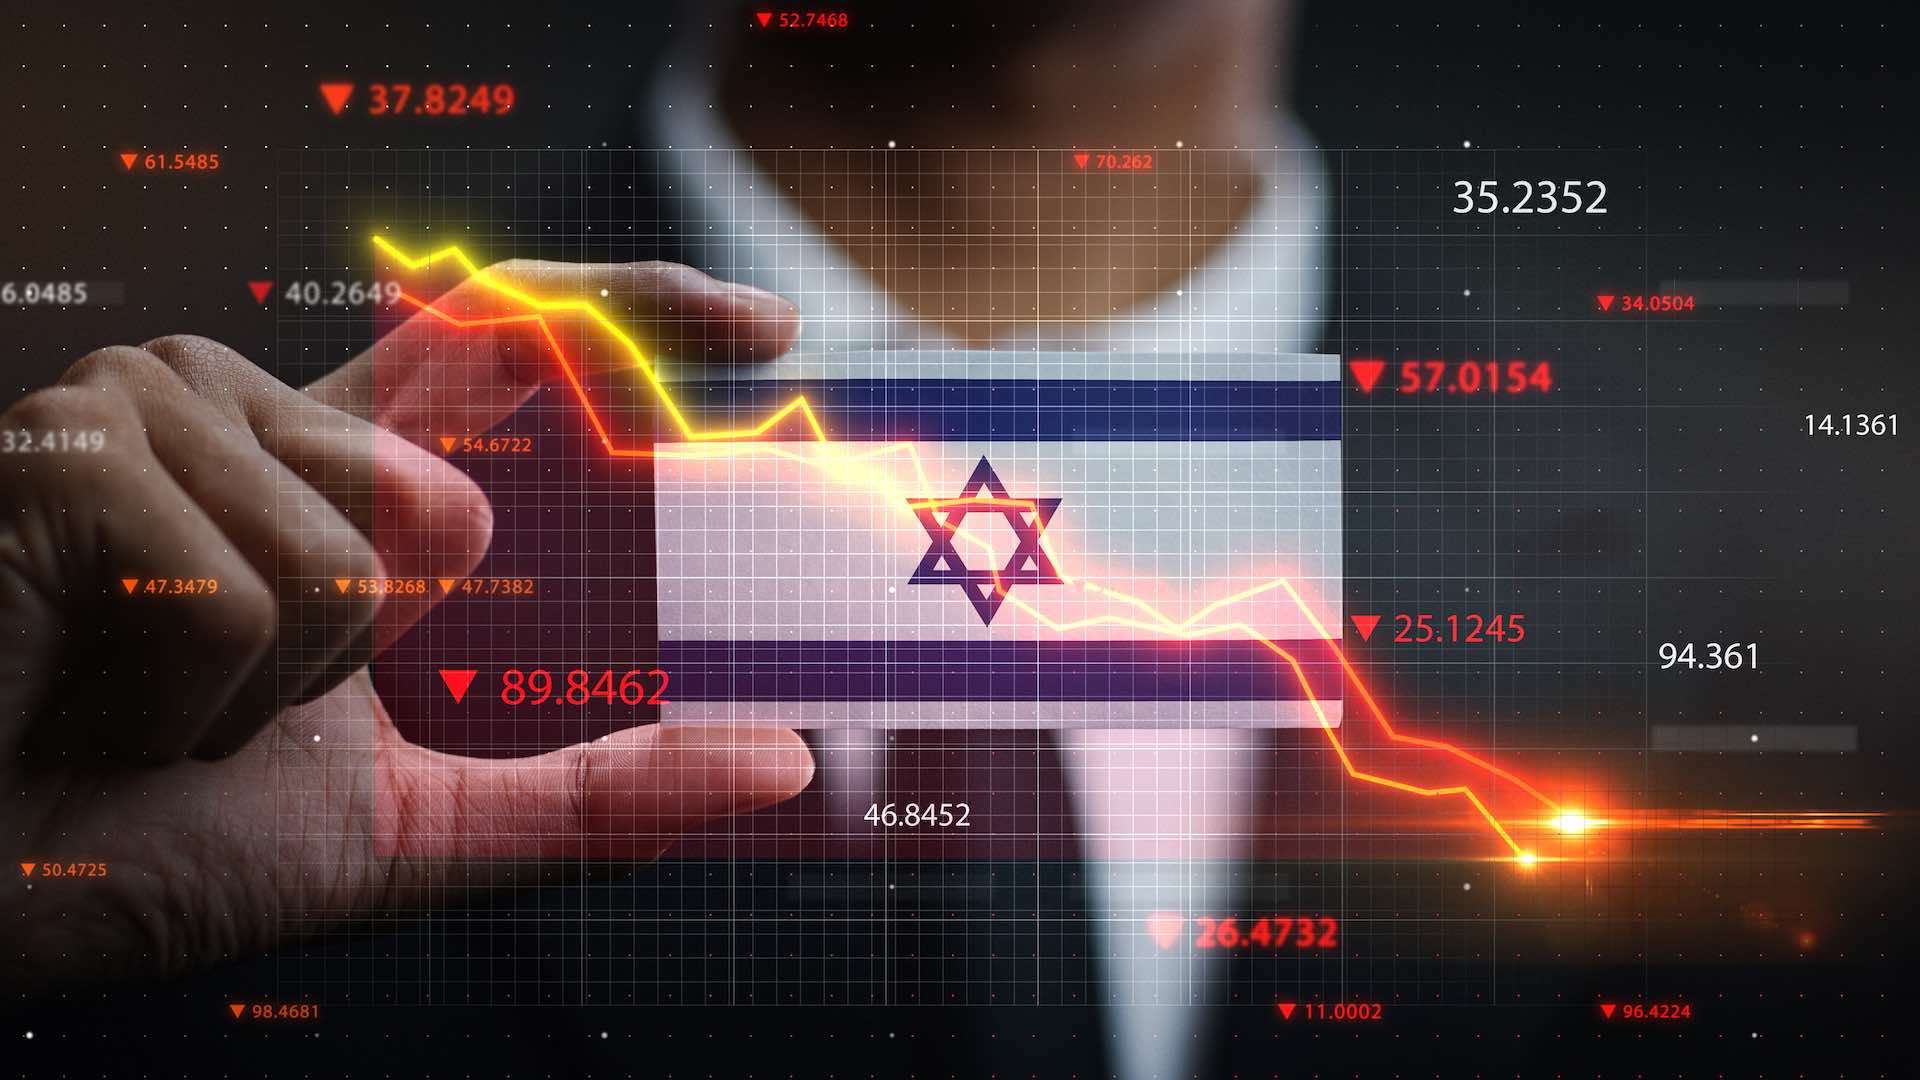 اقتصاد اسرائيل ينكمش بنسبة 19.4% في الربع الرابع بسبب تداعيات حرب غزة